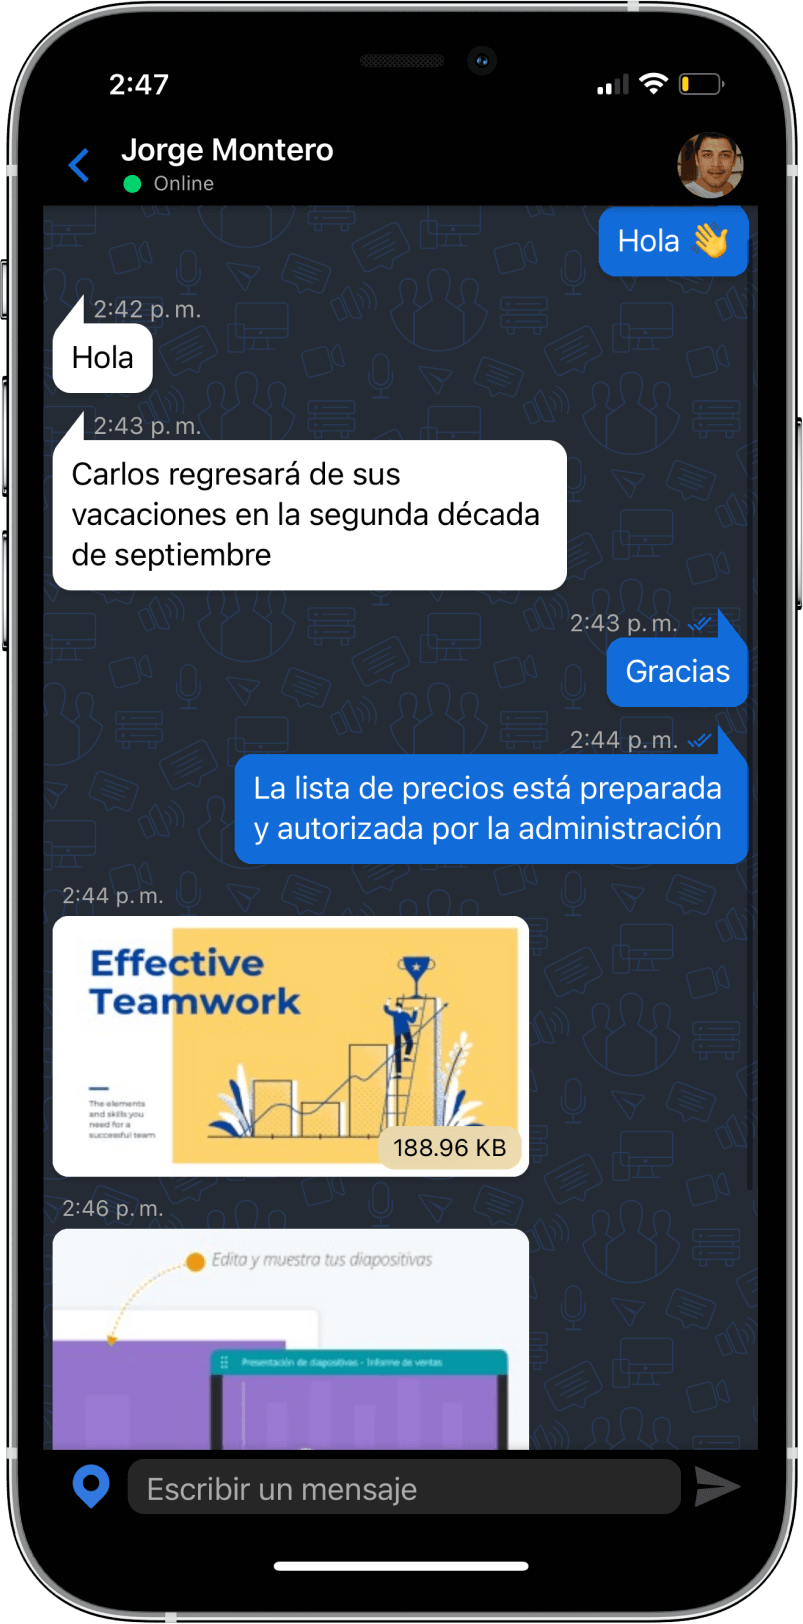 TrueConf 3.3 para iOS: nueva interfaz de usuario, modo de reunión inteligente, acceso sin conexión a chats, contactos e historial de llamadas 13